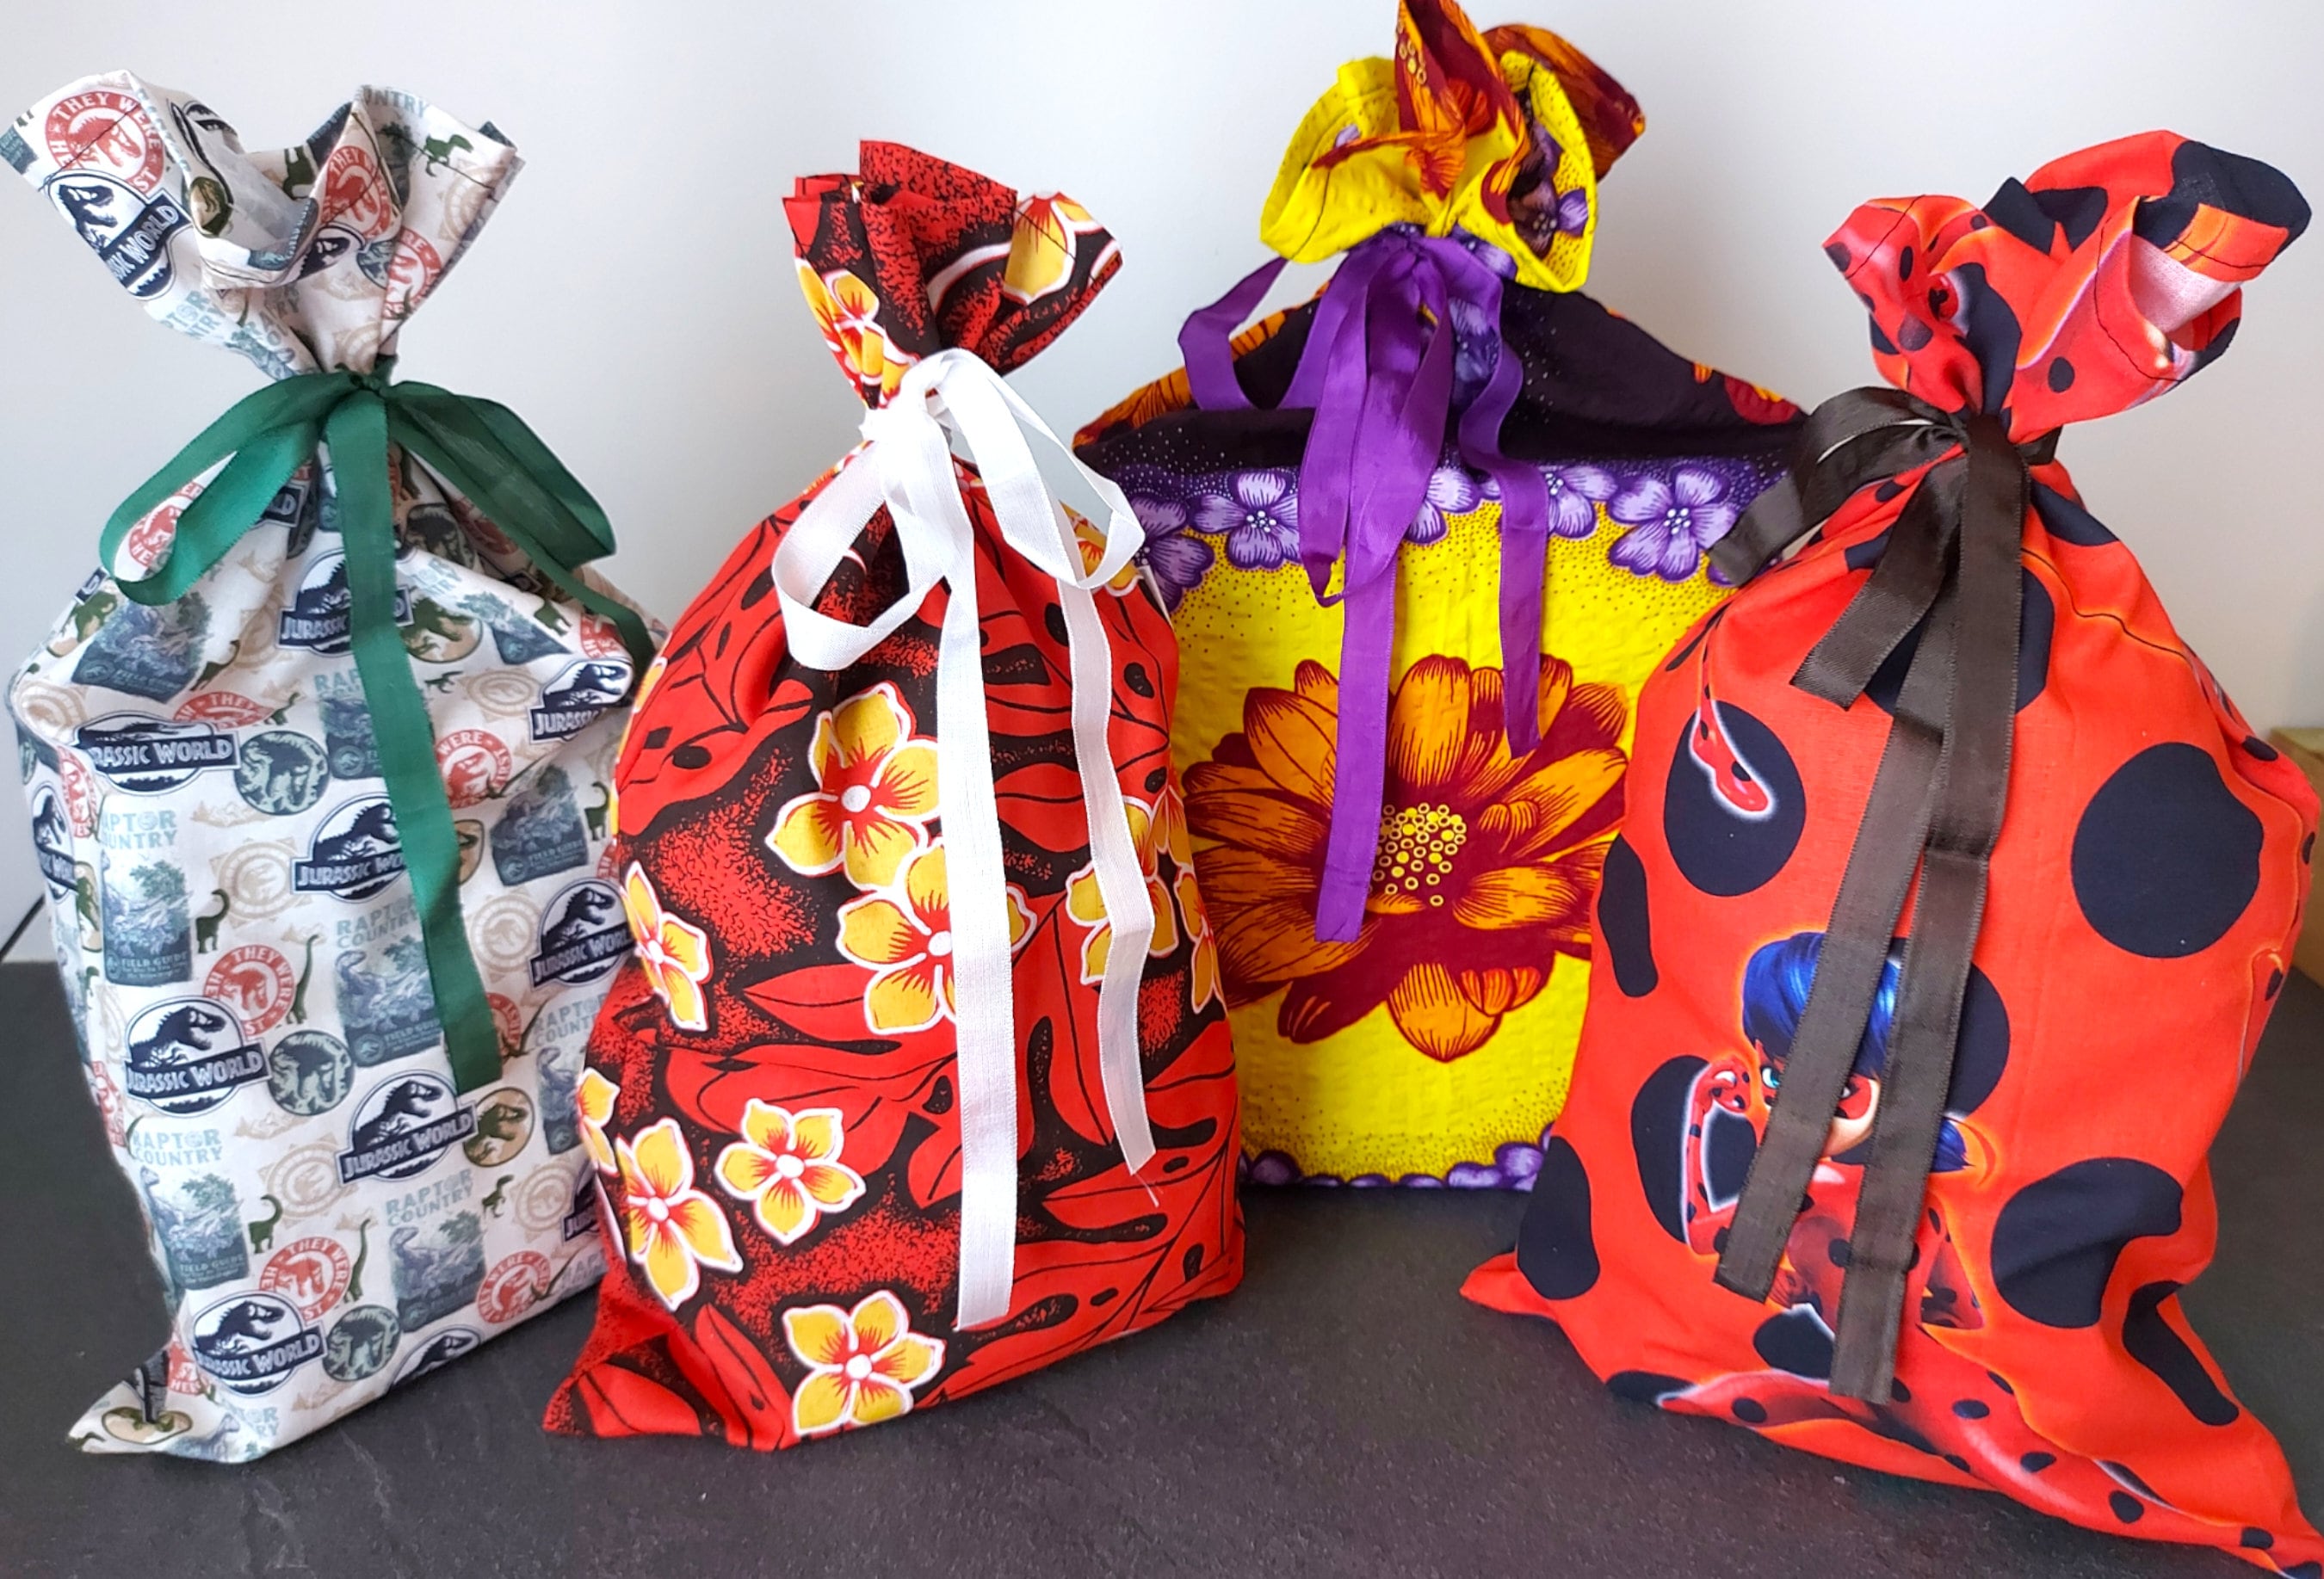 GALUPY Craze Pochette Surprise Enfant Surprise Bag Assortiment Jouets  Petits Cadeaux Anniversaire Fille & Fourniture Scolaire Jouet Licorne Fille